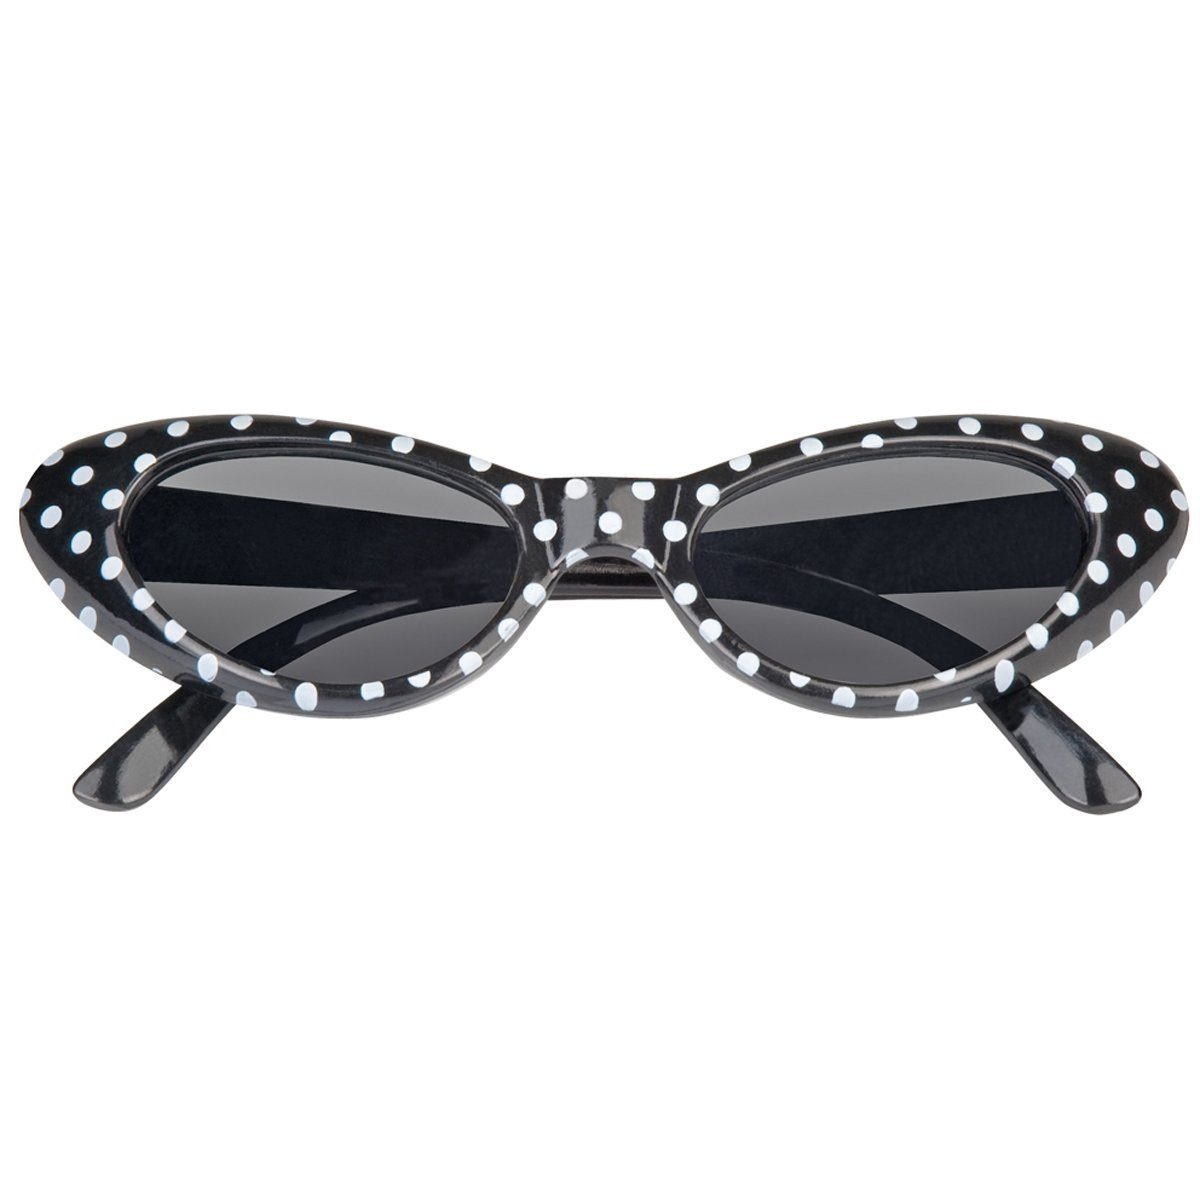 Das Kostümland Kostüm Cat Eye Brille Sandy mit Punkten, Schwarz Weiß